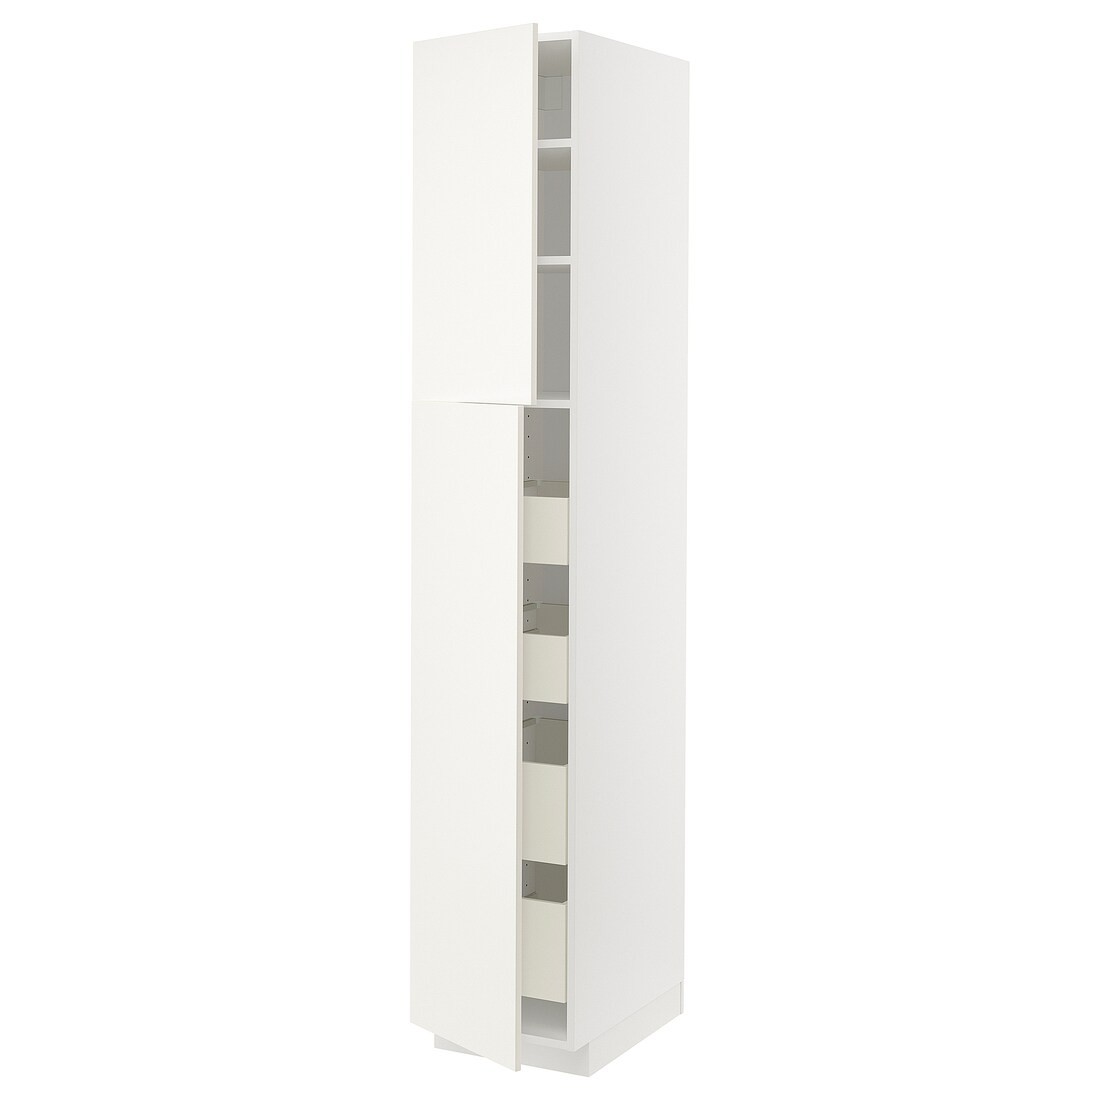 IKEA METOD МЕТОД / MAXIMERA МАКСИМЕРА Шкаф высокий 2 двери / 4 ящика, белый / Veddinge белый, 40x60x220 см 69456993 | 694.569.93